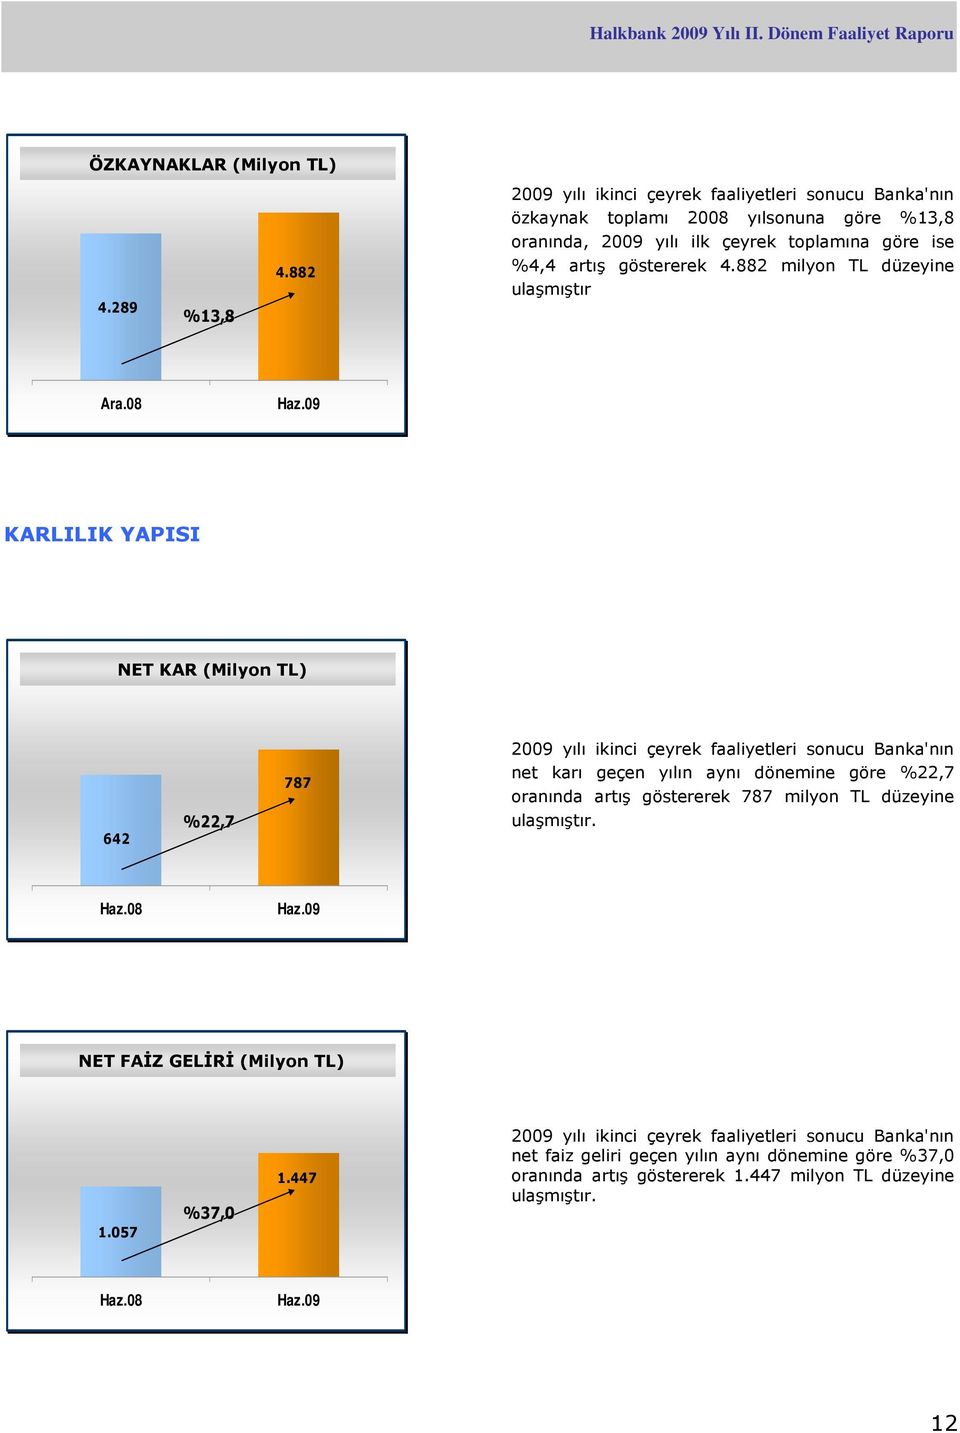 08 KARLILIK YAPISI NET KAR (Milyon TL) 642 %22,7 787 2009 yılı ikinci çeyrek faaliyetleri sonucu Banka'nın net karı geçen yılın aynı dönemine göre %22,7 oranında artış